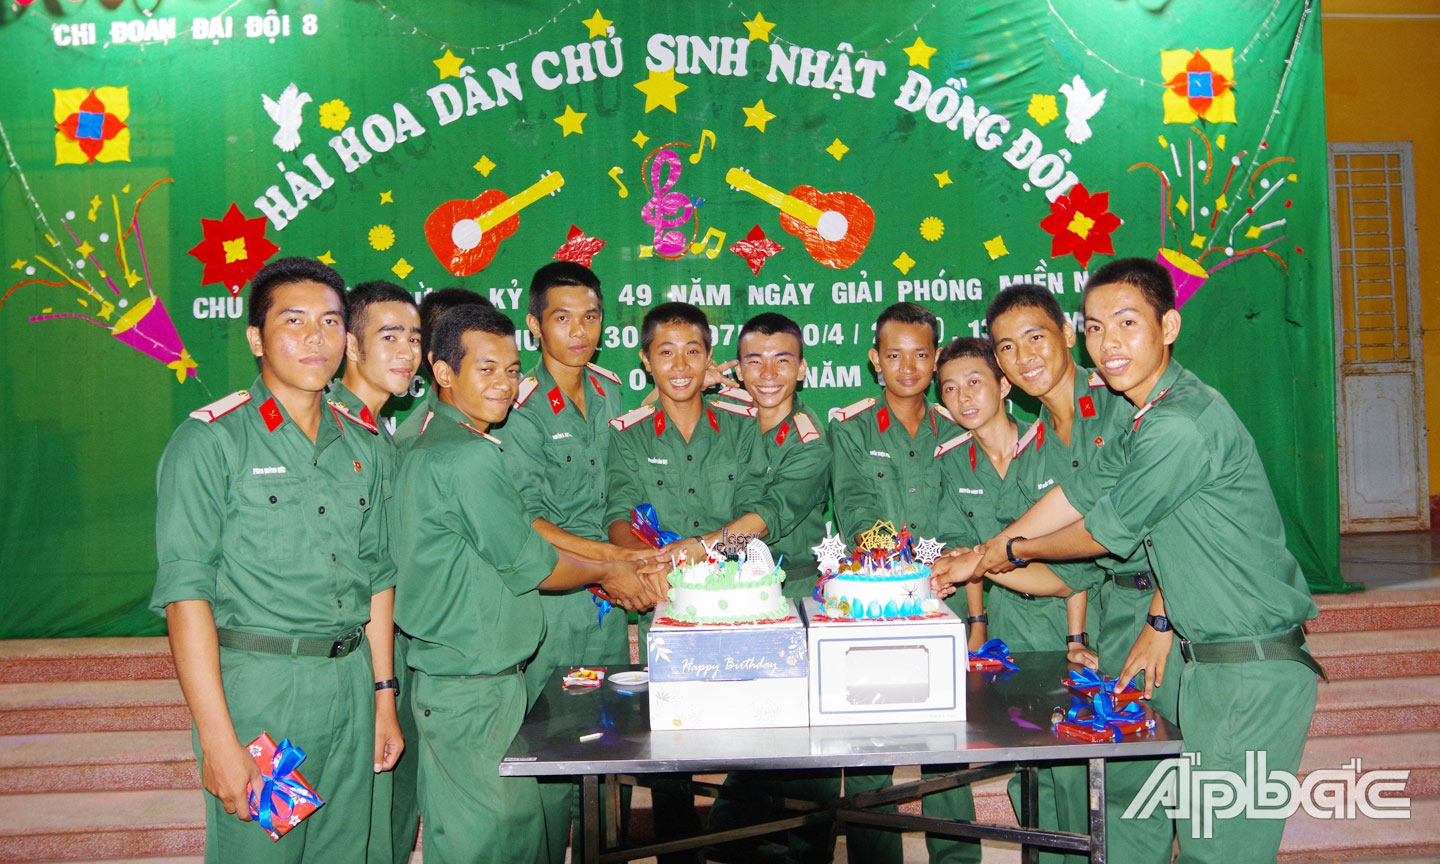 Các chiến sĩ sinh nhật trong tháng 4 ra mắt đêm “Sinh nhật đồng đội”.